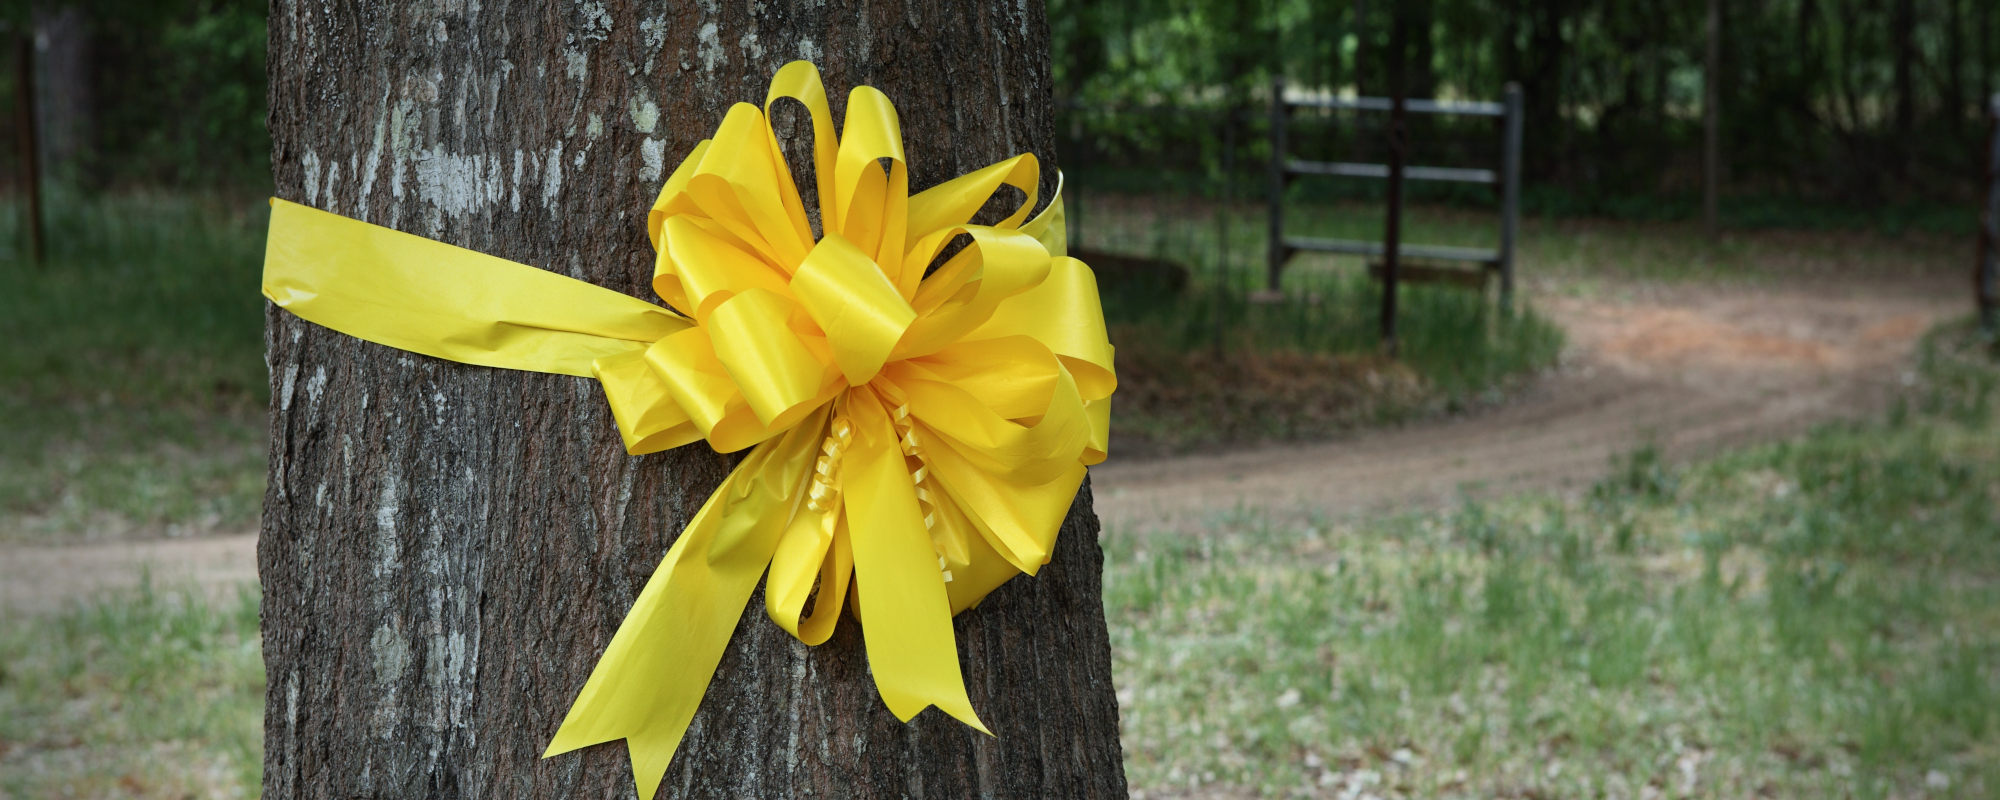 Tony Orlando and Dawn - tie a yellow ribbon (Lyrics) 